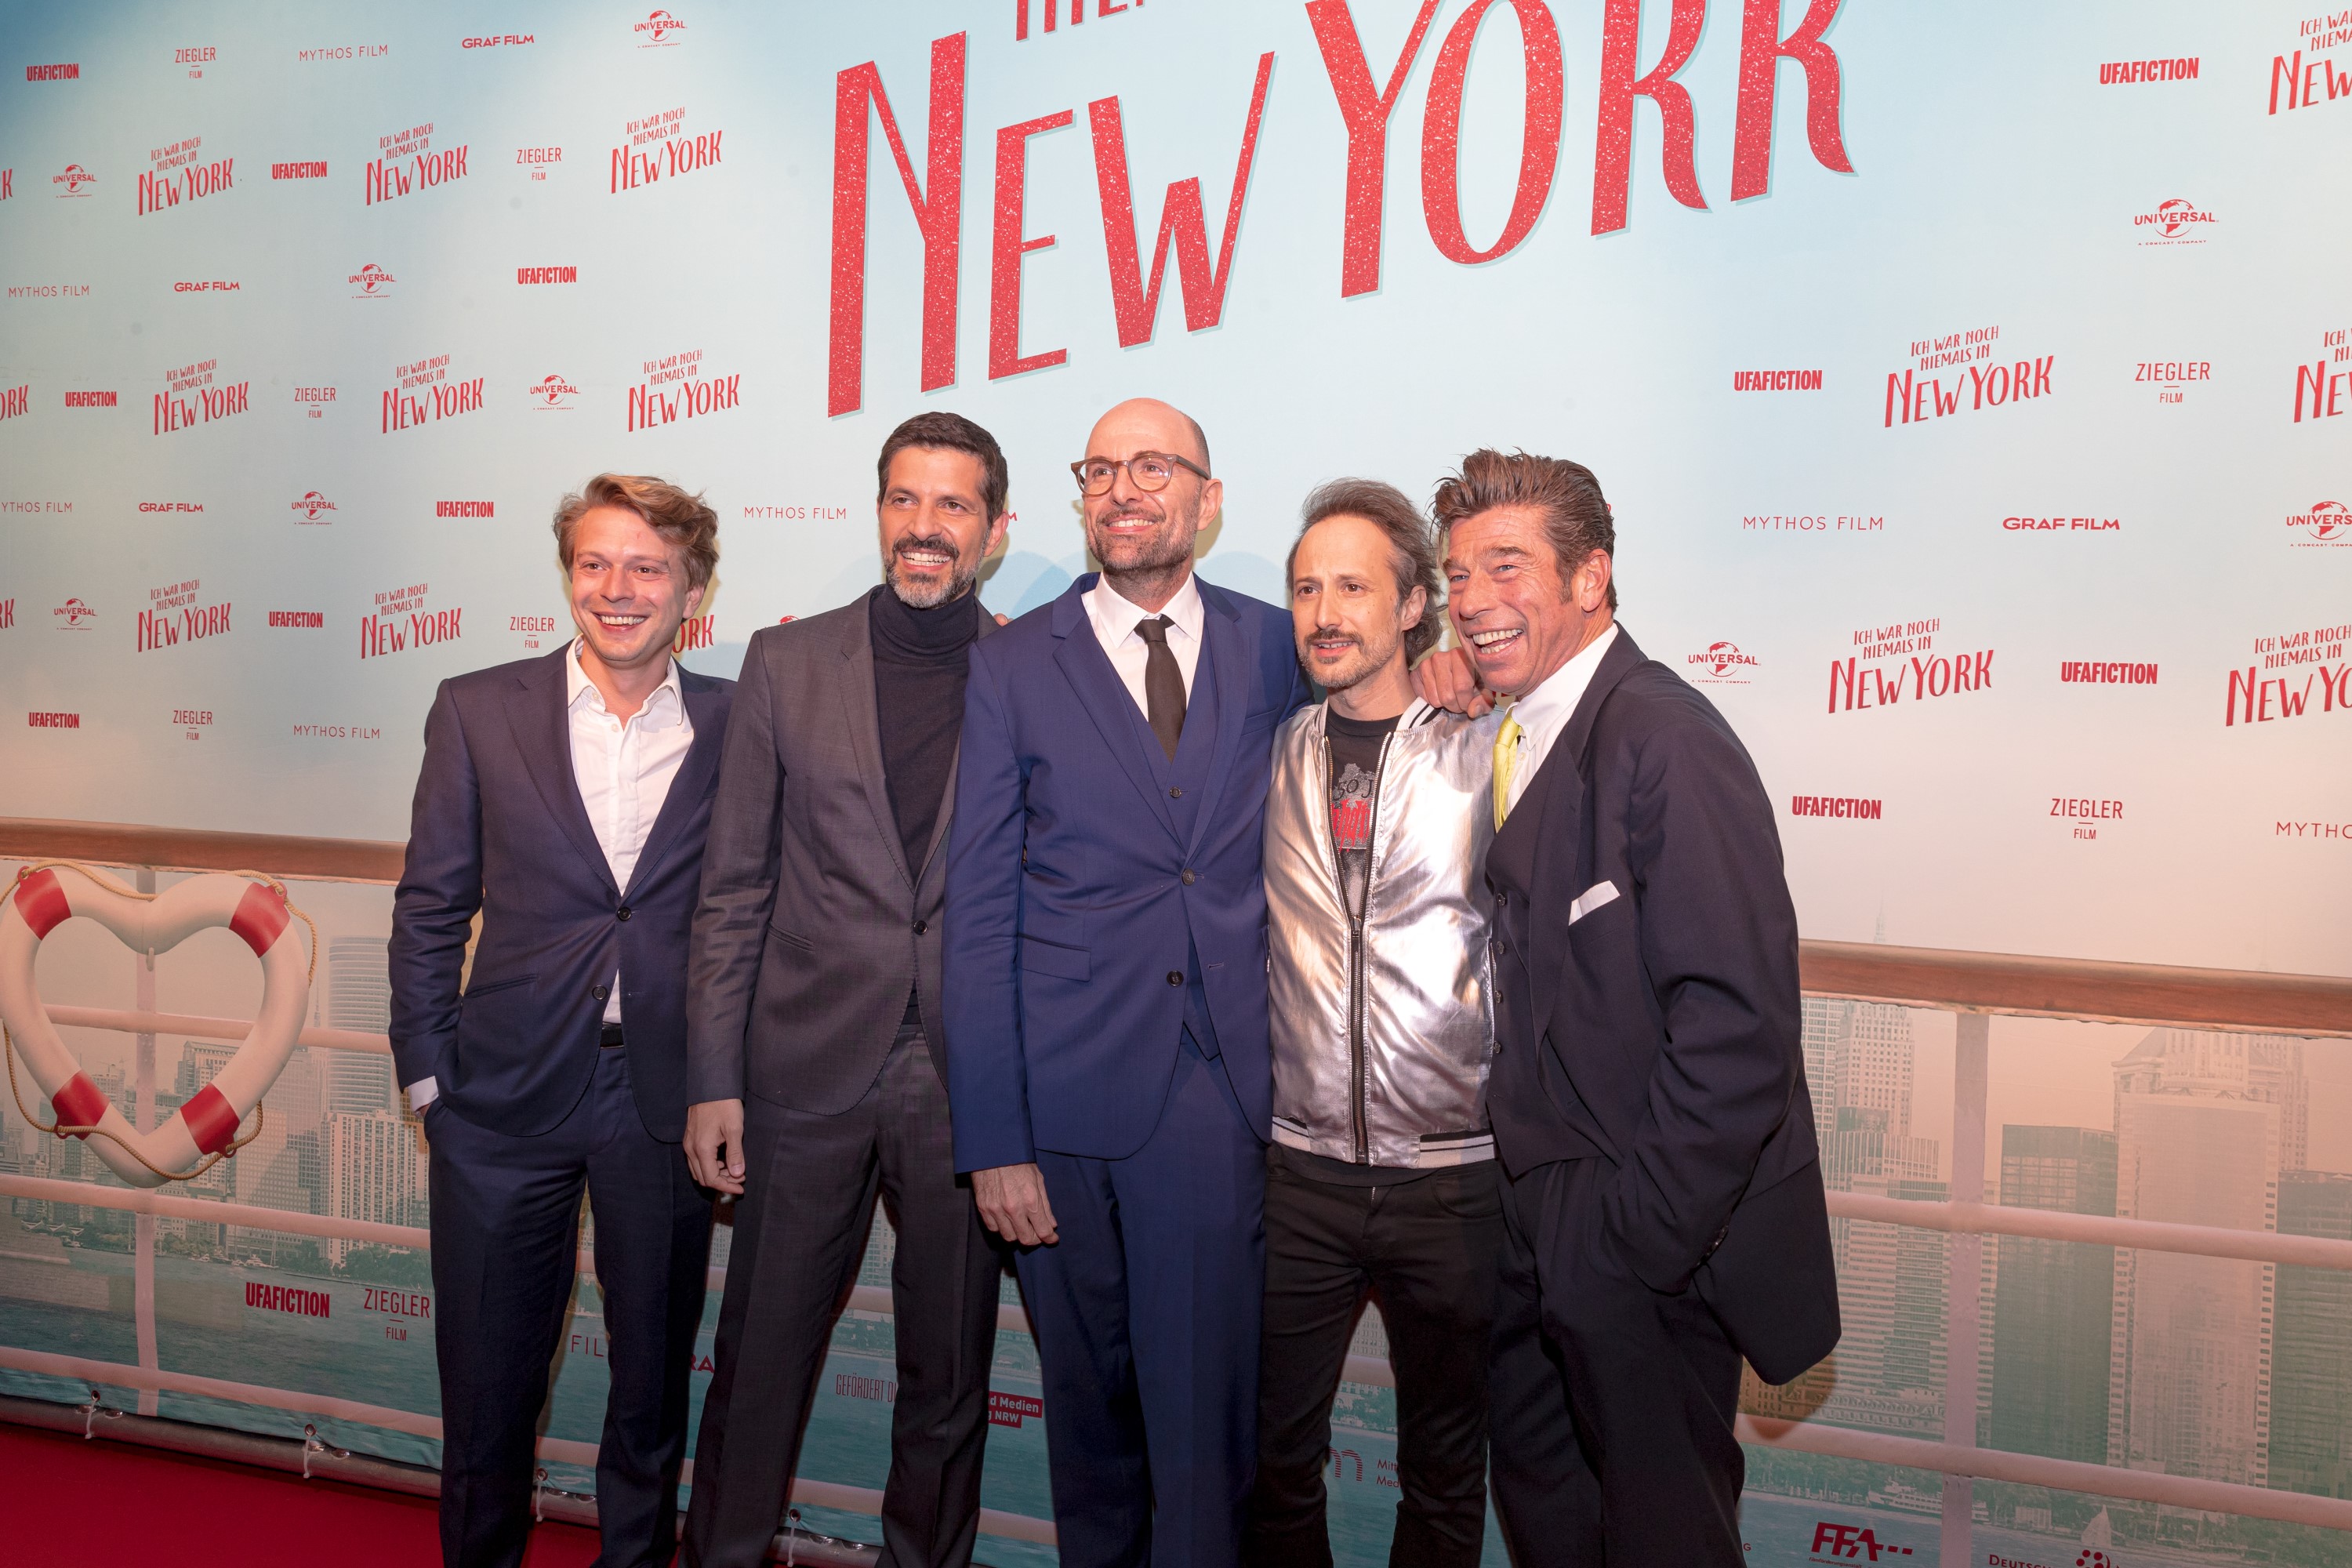 Ich war noch niemals in New York: der Cast auf dem roten Teppich mit Regisseur Philipp Stölzl